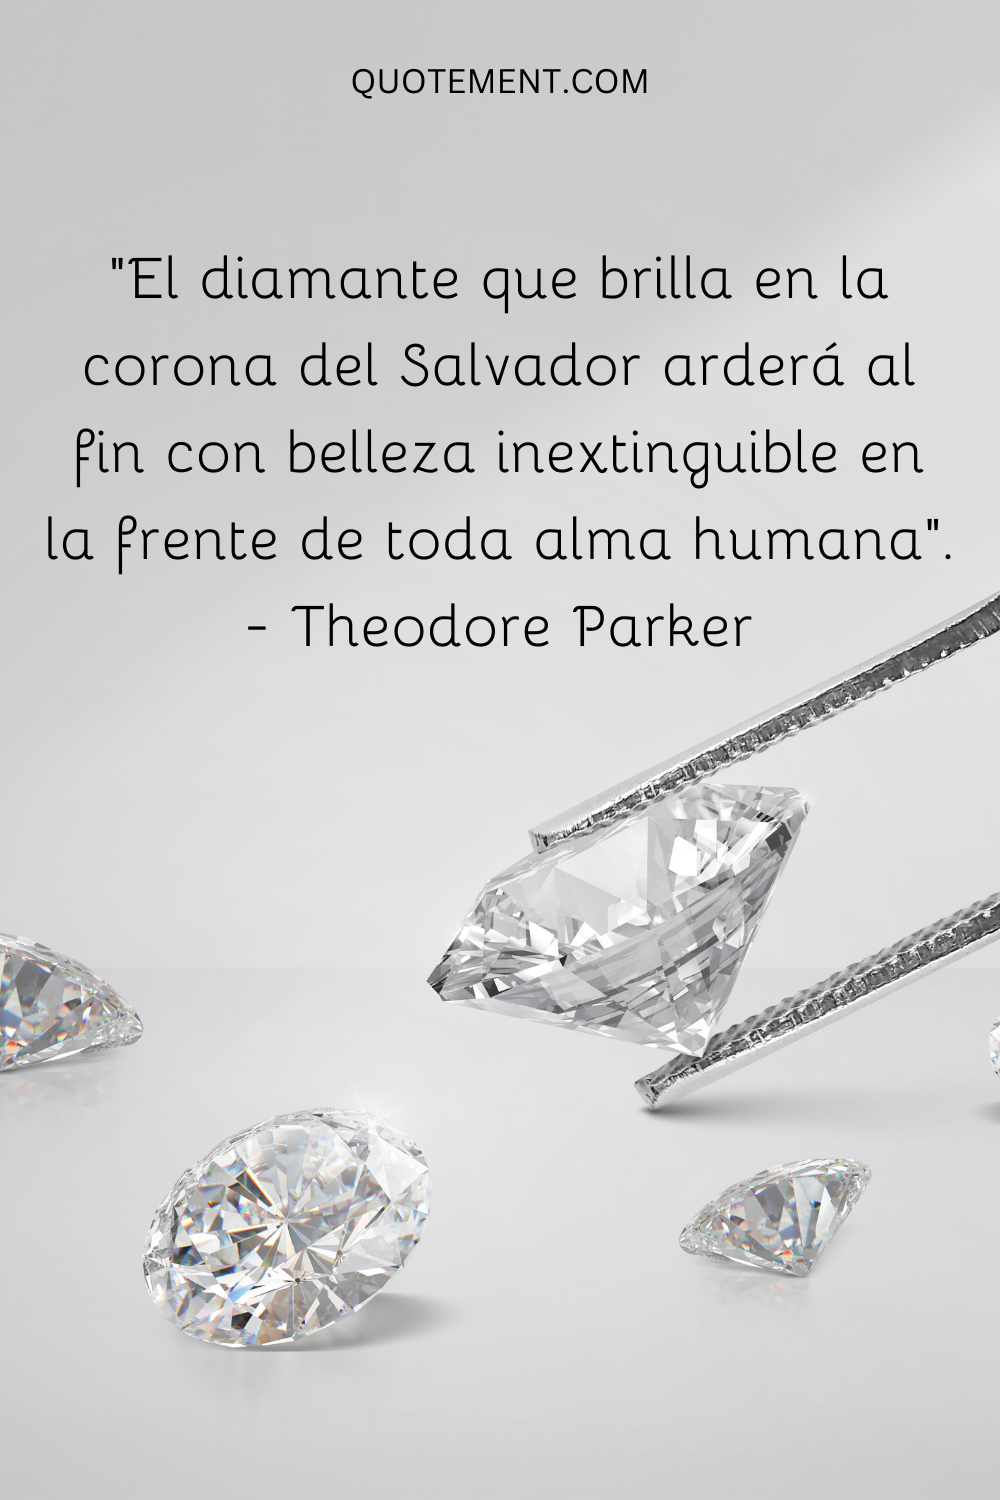 El diamante que brilla en la corona del Salvador arderá por fin en la frente de toda alma humana con una belleza inmarcesible.